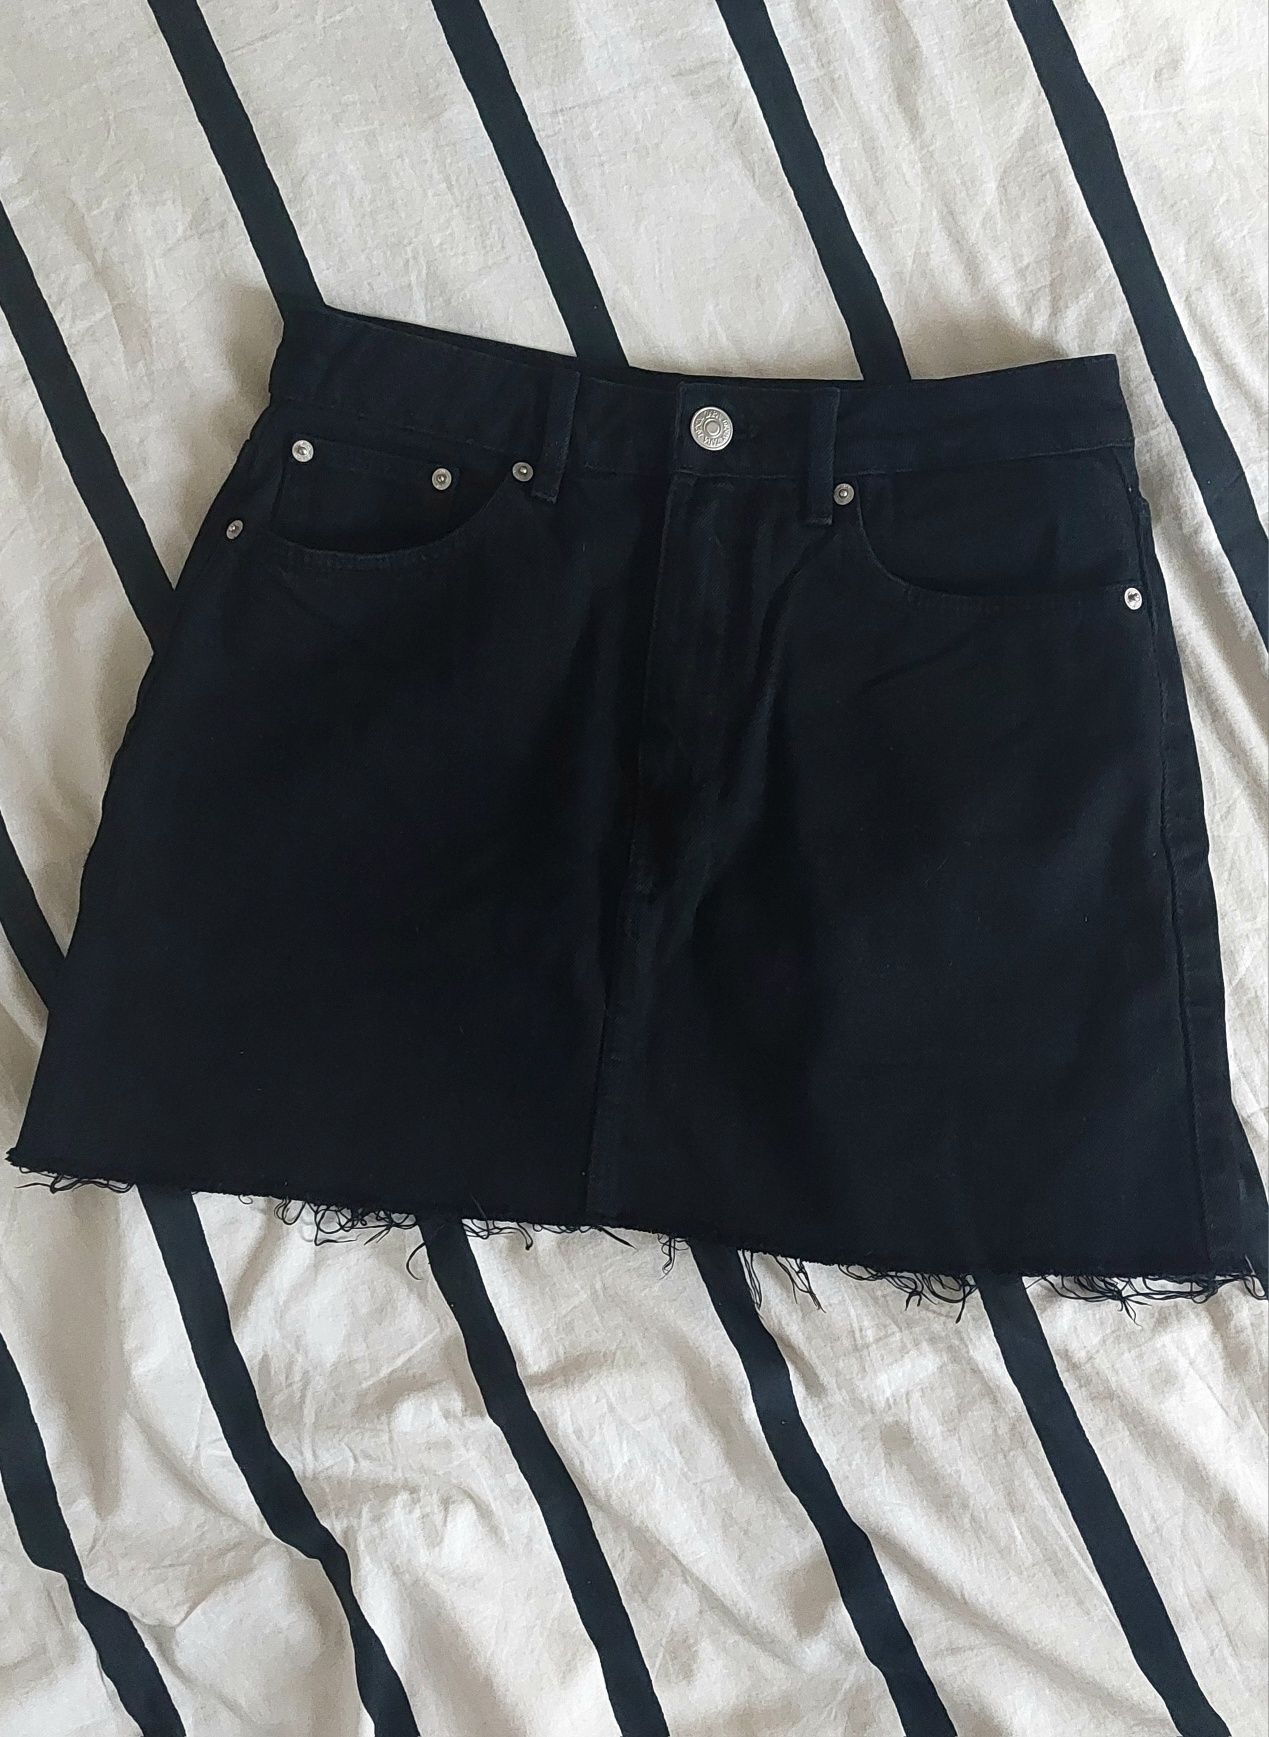 Czarna jeansowa spódniczka, Zara